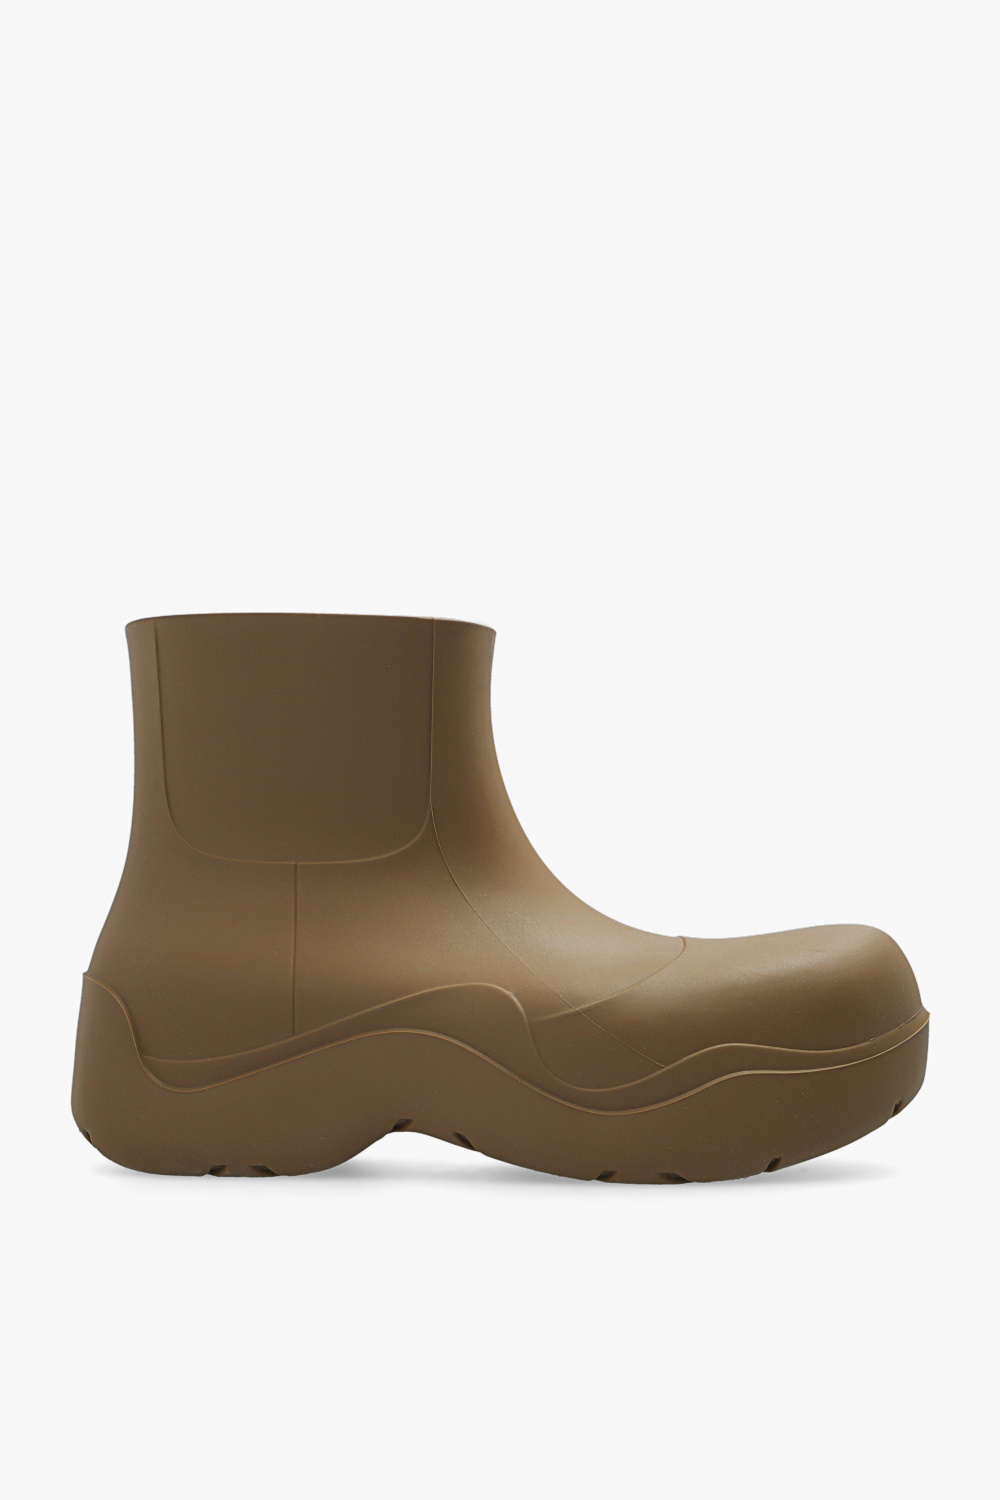 Bottega Veneta 'Puddle' short rain boots | Men's Shoes | Vitkac